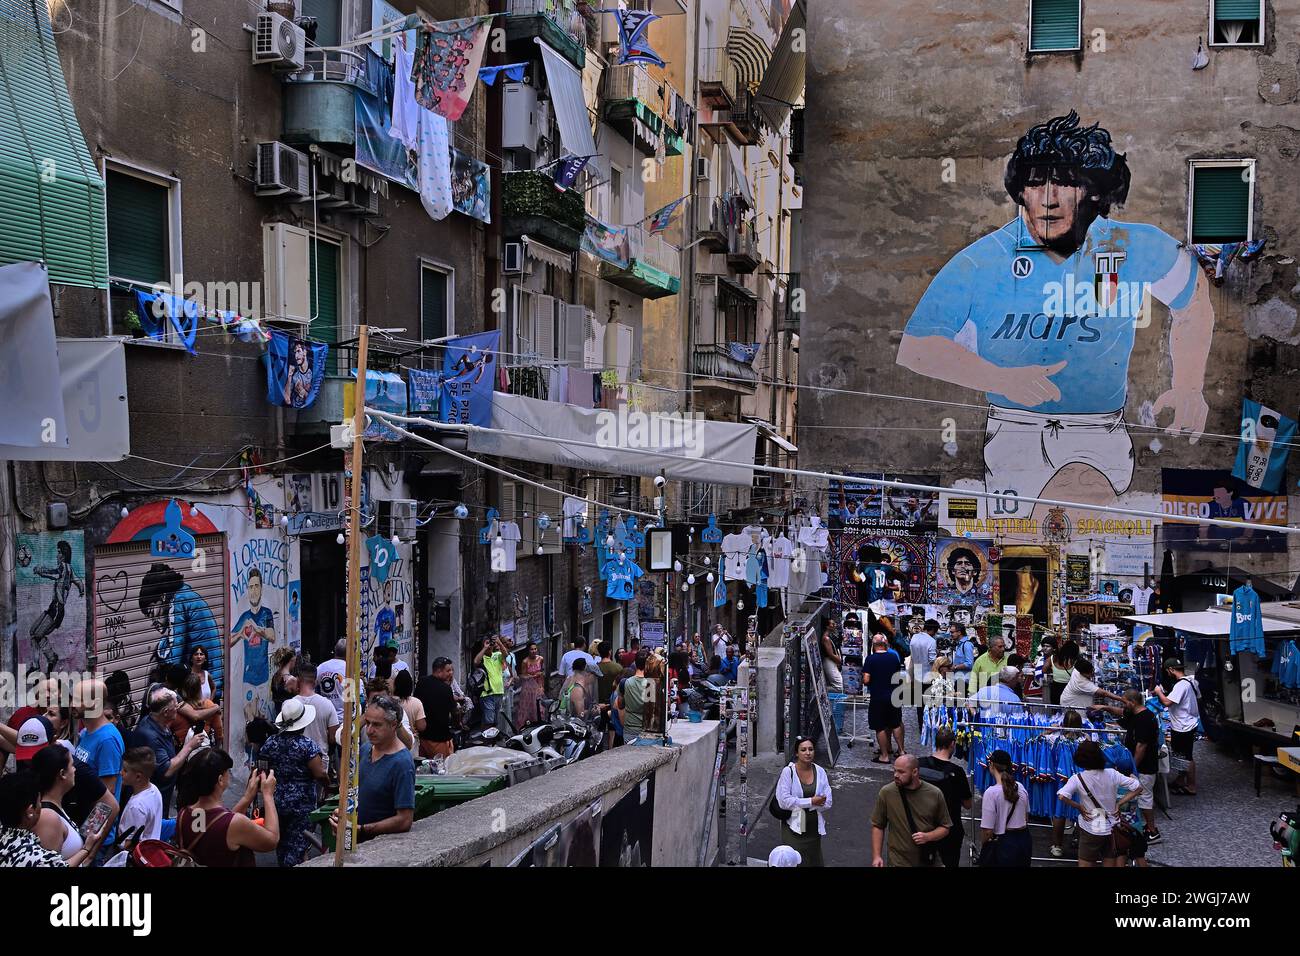 Murale Diego Armando Maradona - quartieri spagnoli (murale del quartiere spagnolo) Napoli, Italia, Napoli Campania Italia. Realizzato in occasione del secondo Scudetto di Napoli, nel 1990, il murale di Maradona si trova nei quartieri spagnoli ed è stato restaurato nel 2016 grazie ai contributi dei cittadini della zona Foto Stock